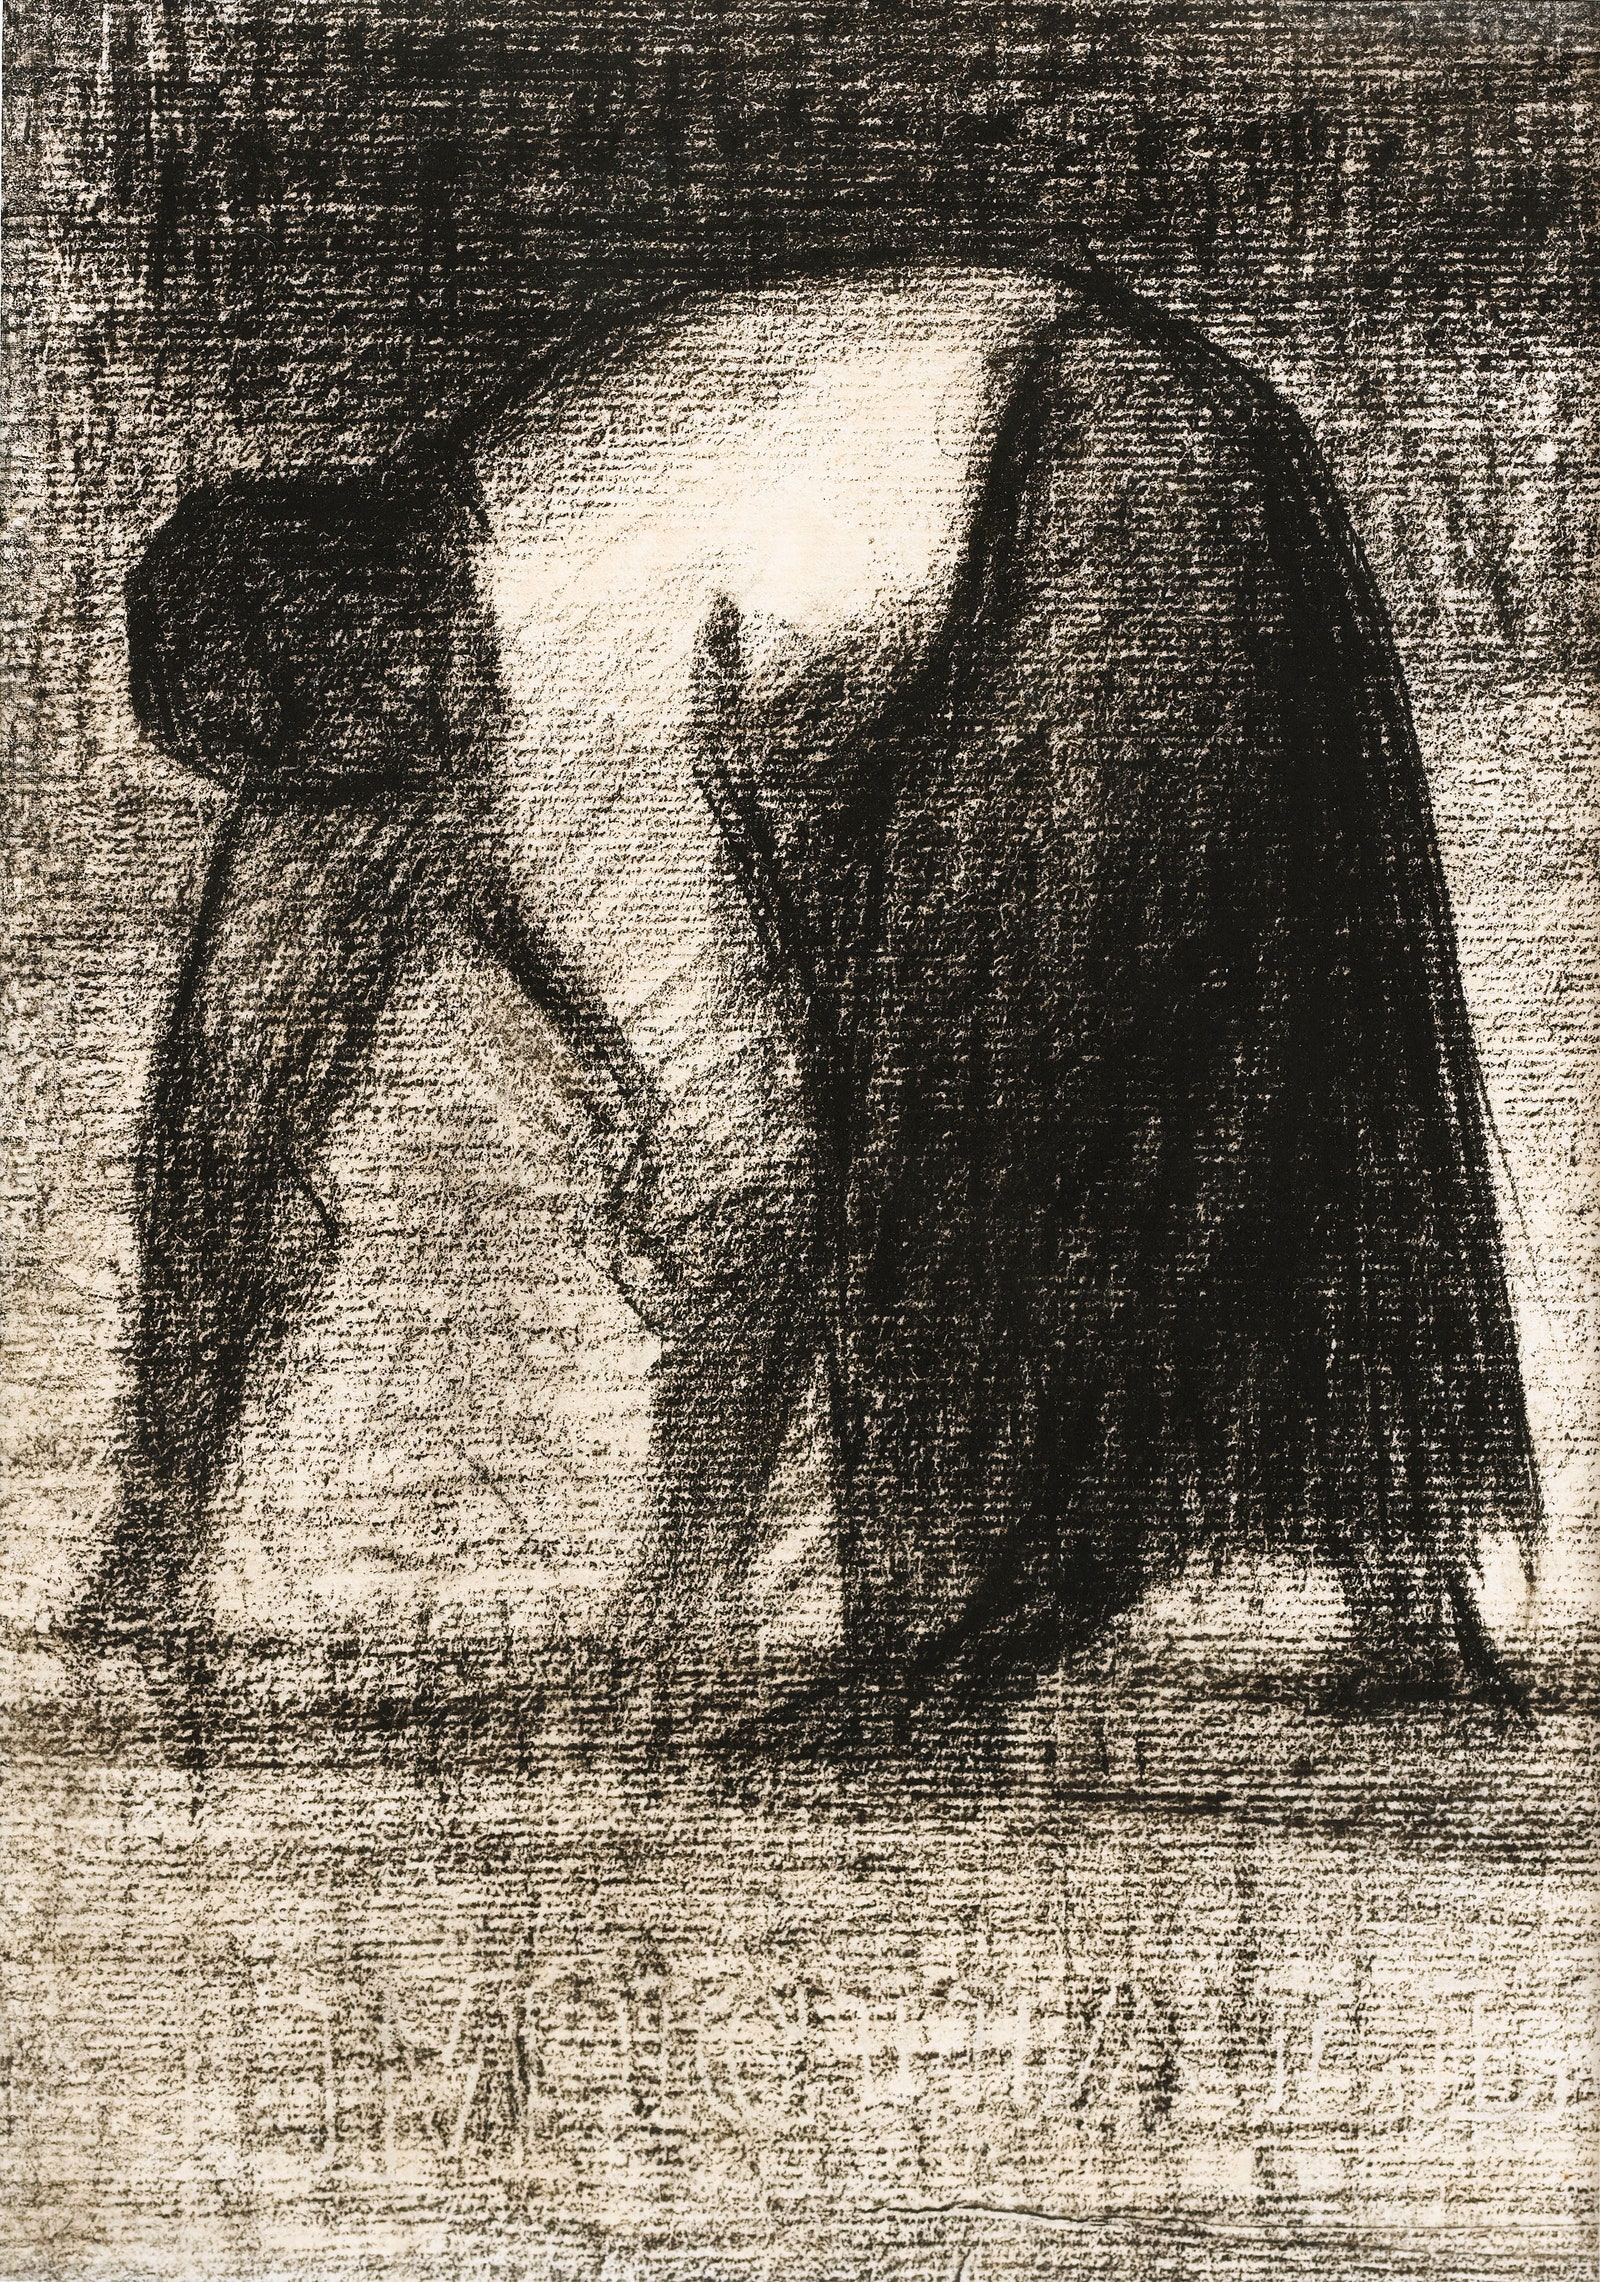 Жорж Сера. Крестьянка упирающаяся руками в землю. 1882.